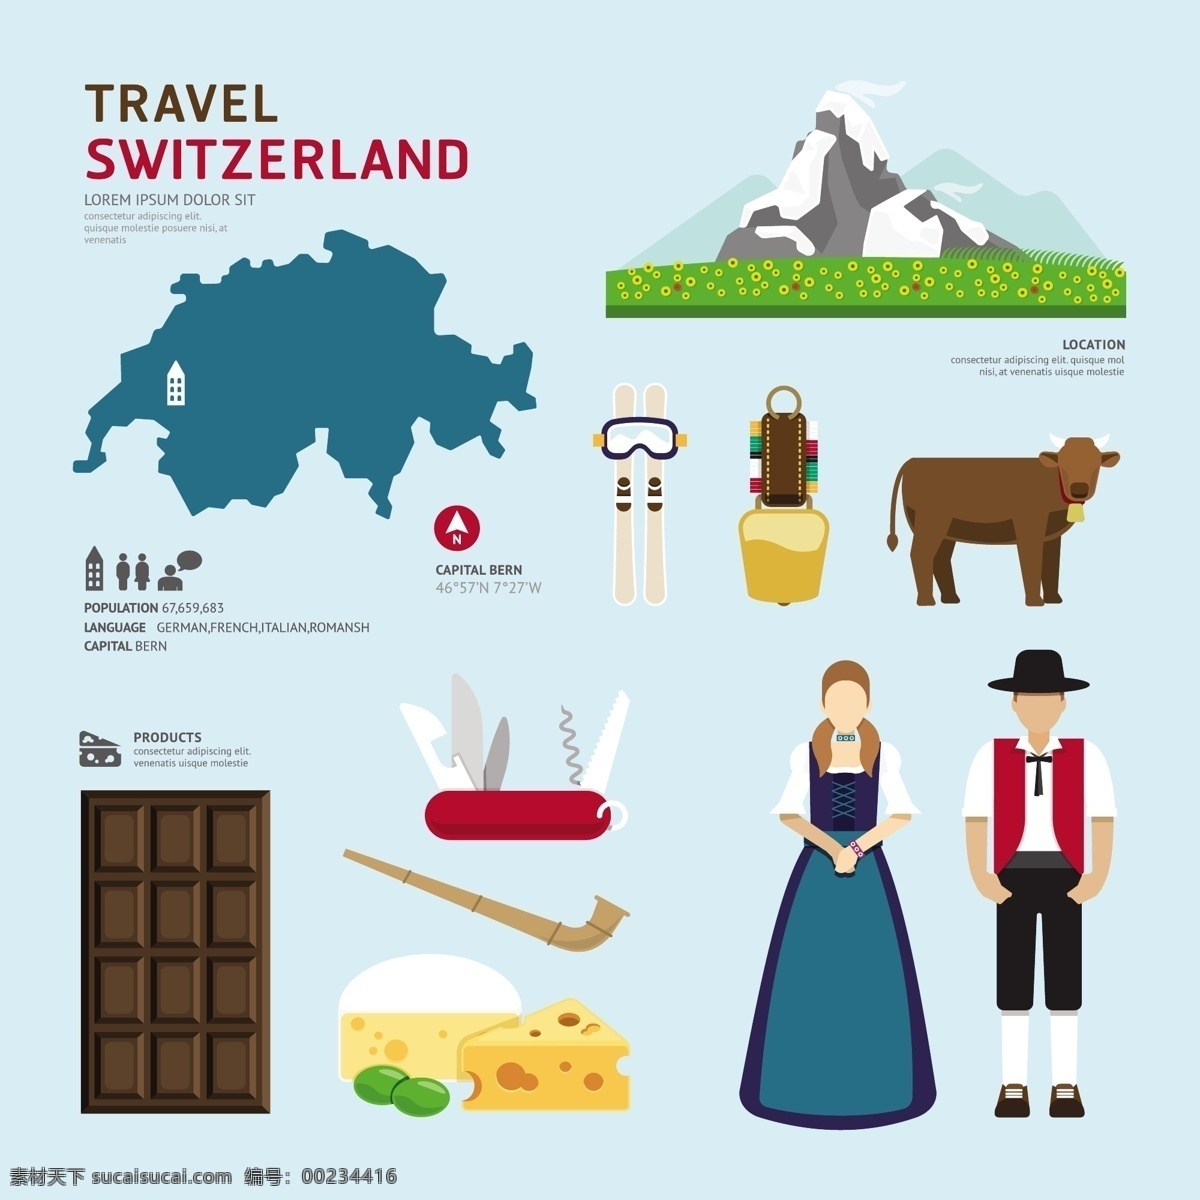 瑞士旅游元素 瑞士旅游 瑞士元素 瑞士主题 国际旅游 国际 瑞士景点 出国旅游 瑞士风情 瑞士文化 阿尔卑斯山 瑞士军刀 奶酪 巧克力